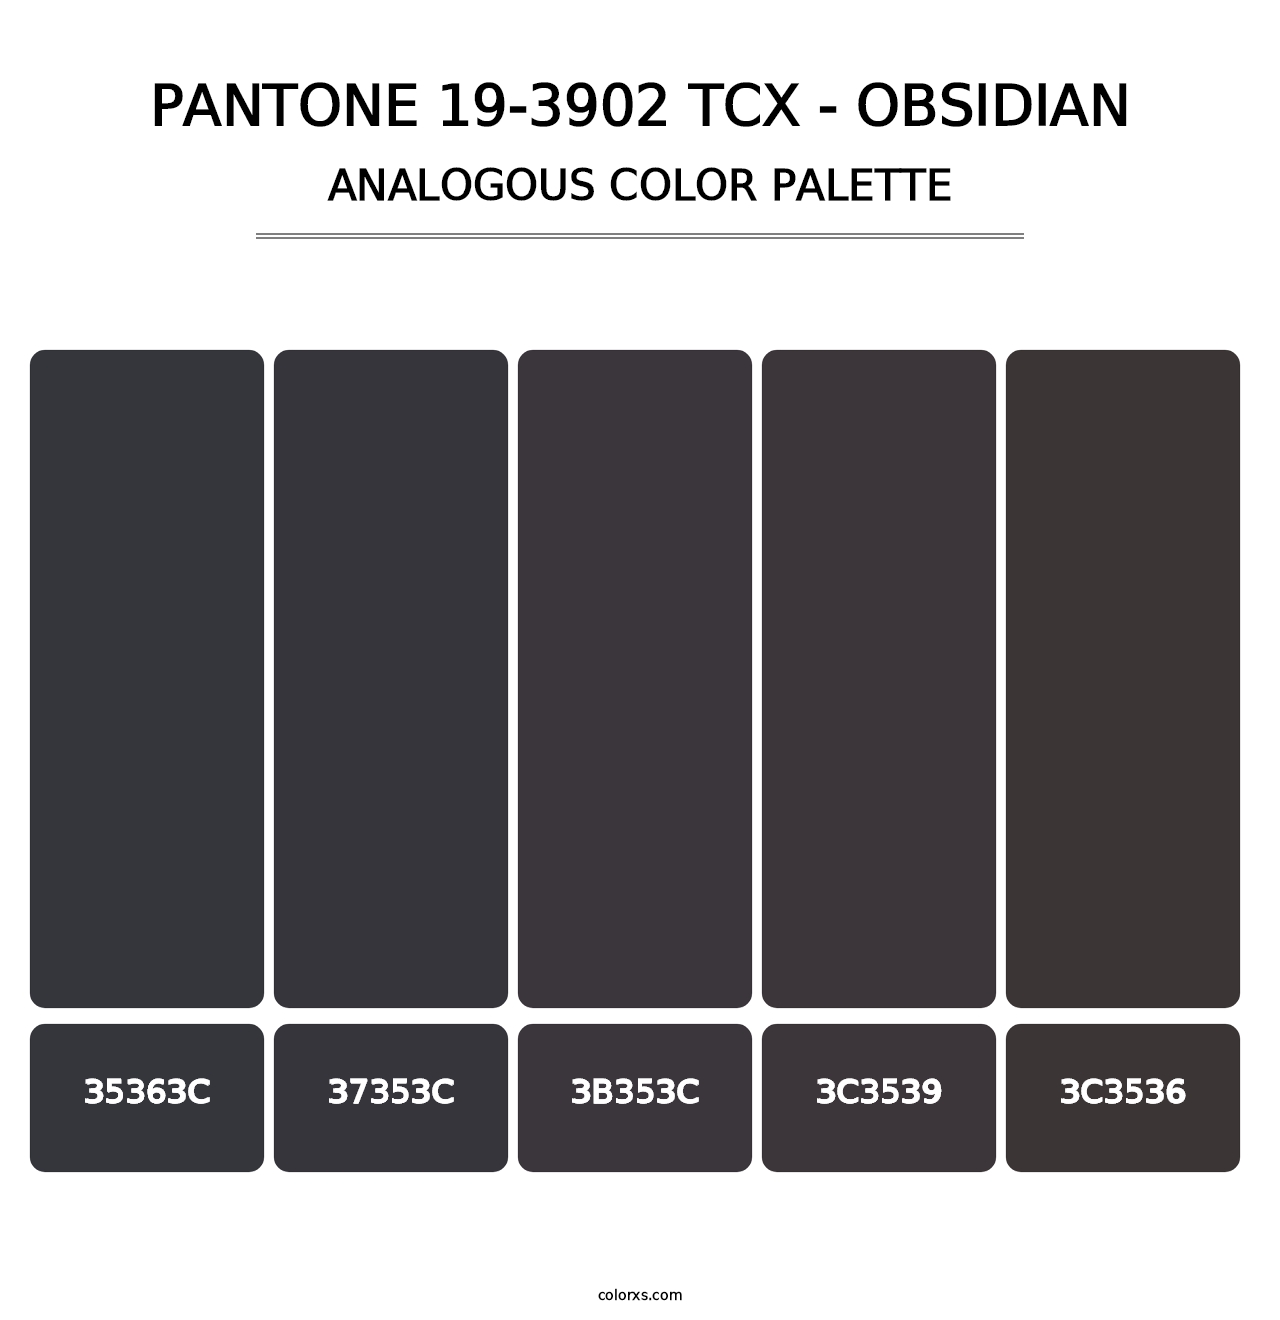 PANTONE 19-3902 TCX - Obsidian - Analogous Color Palette